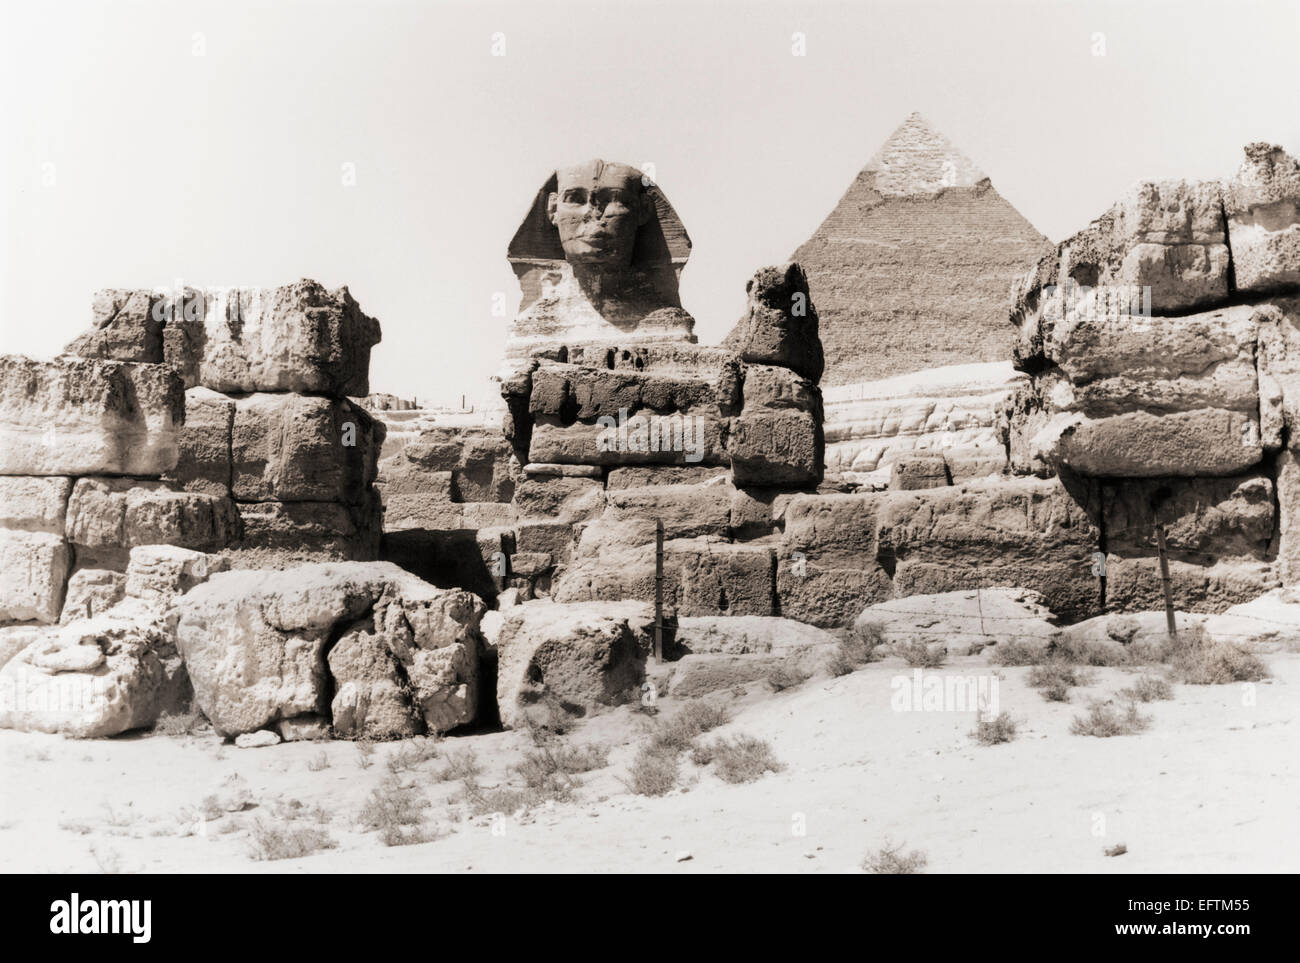 Le grand Sphinx de Gizeh et la grande pyramide de Gizeh, aka pyramide de Chéops ou la pyramide de Kheops, en Egypte. Banque D'Images